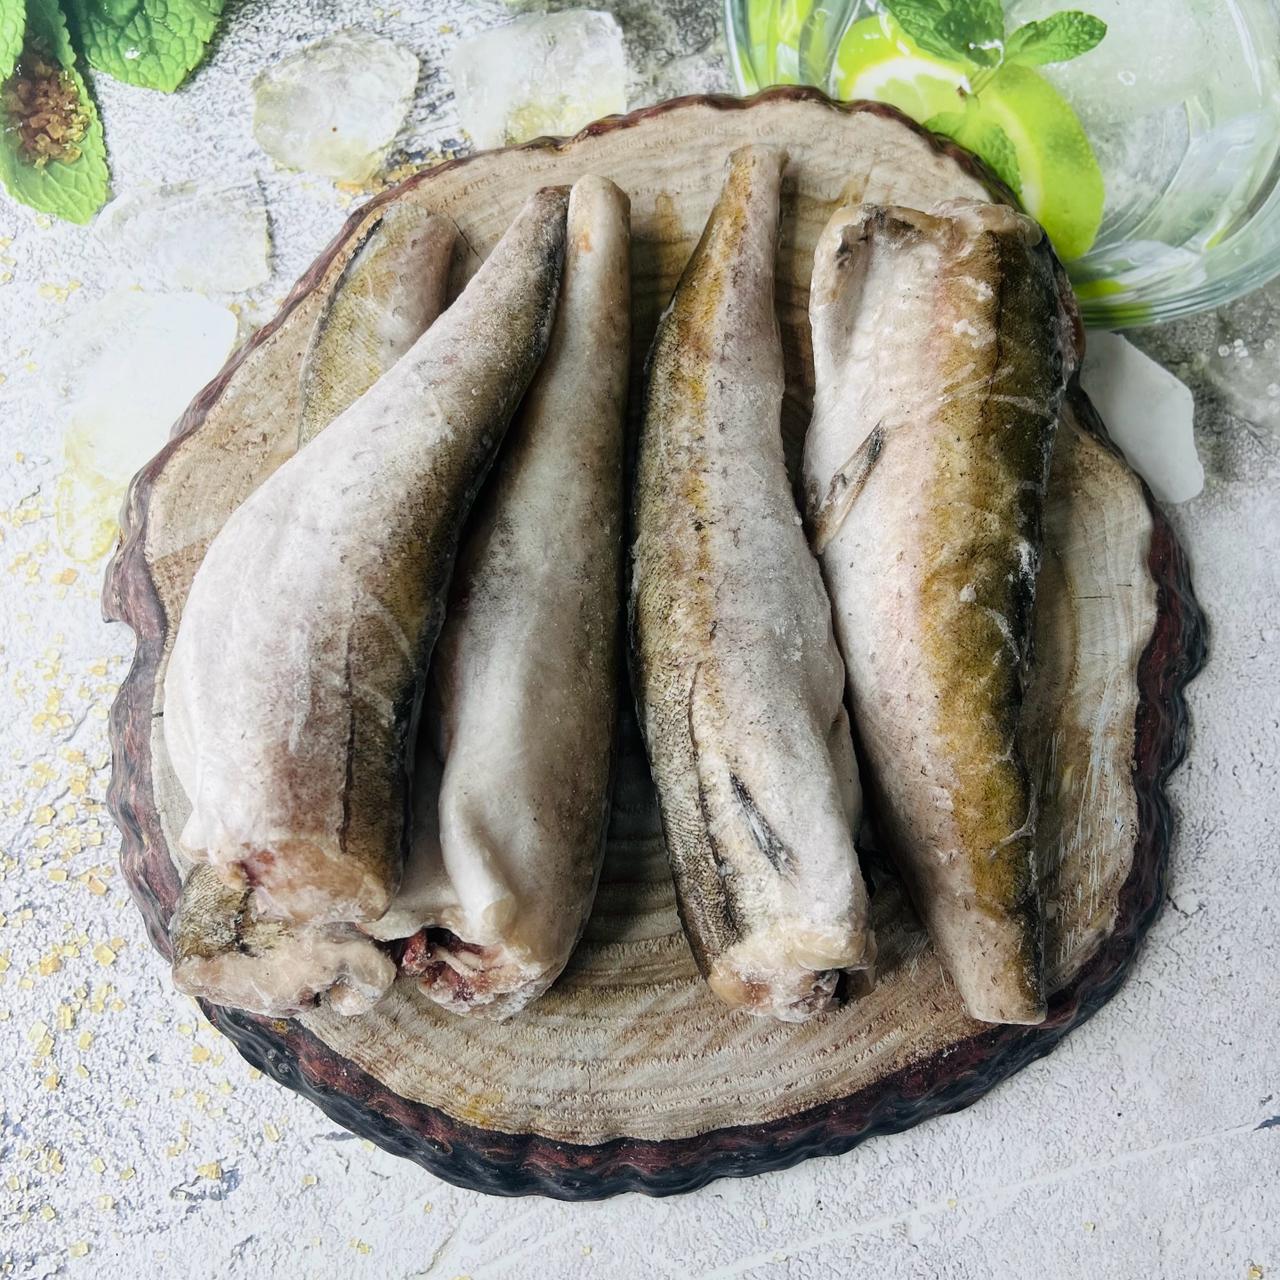 Широкий ассортимент рыбы и морепродуктов от «Hot Fish. Рыба от Горячева» с  доставкой на дом по Москве и Области.